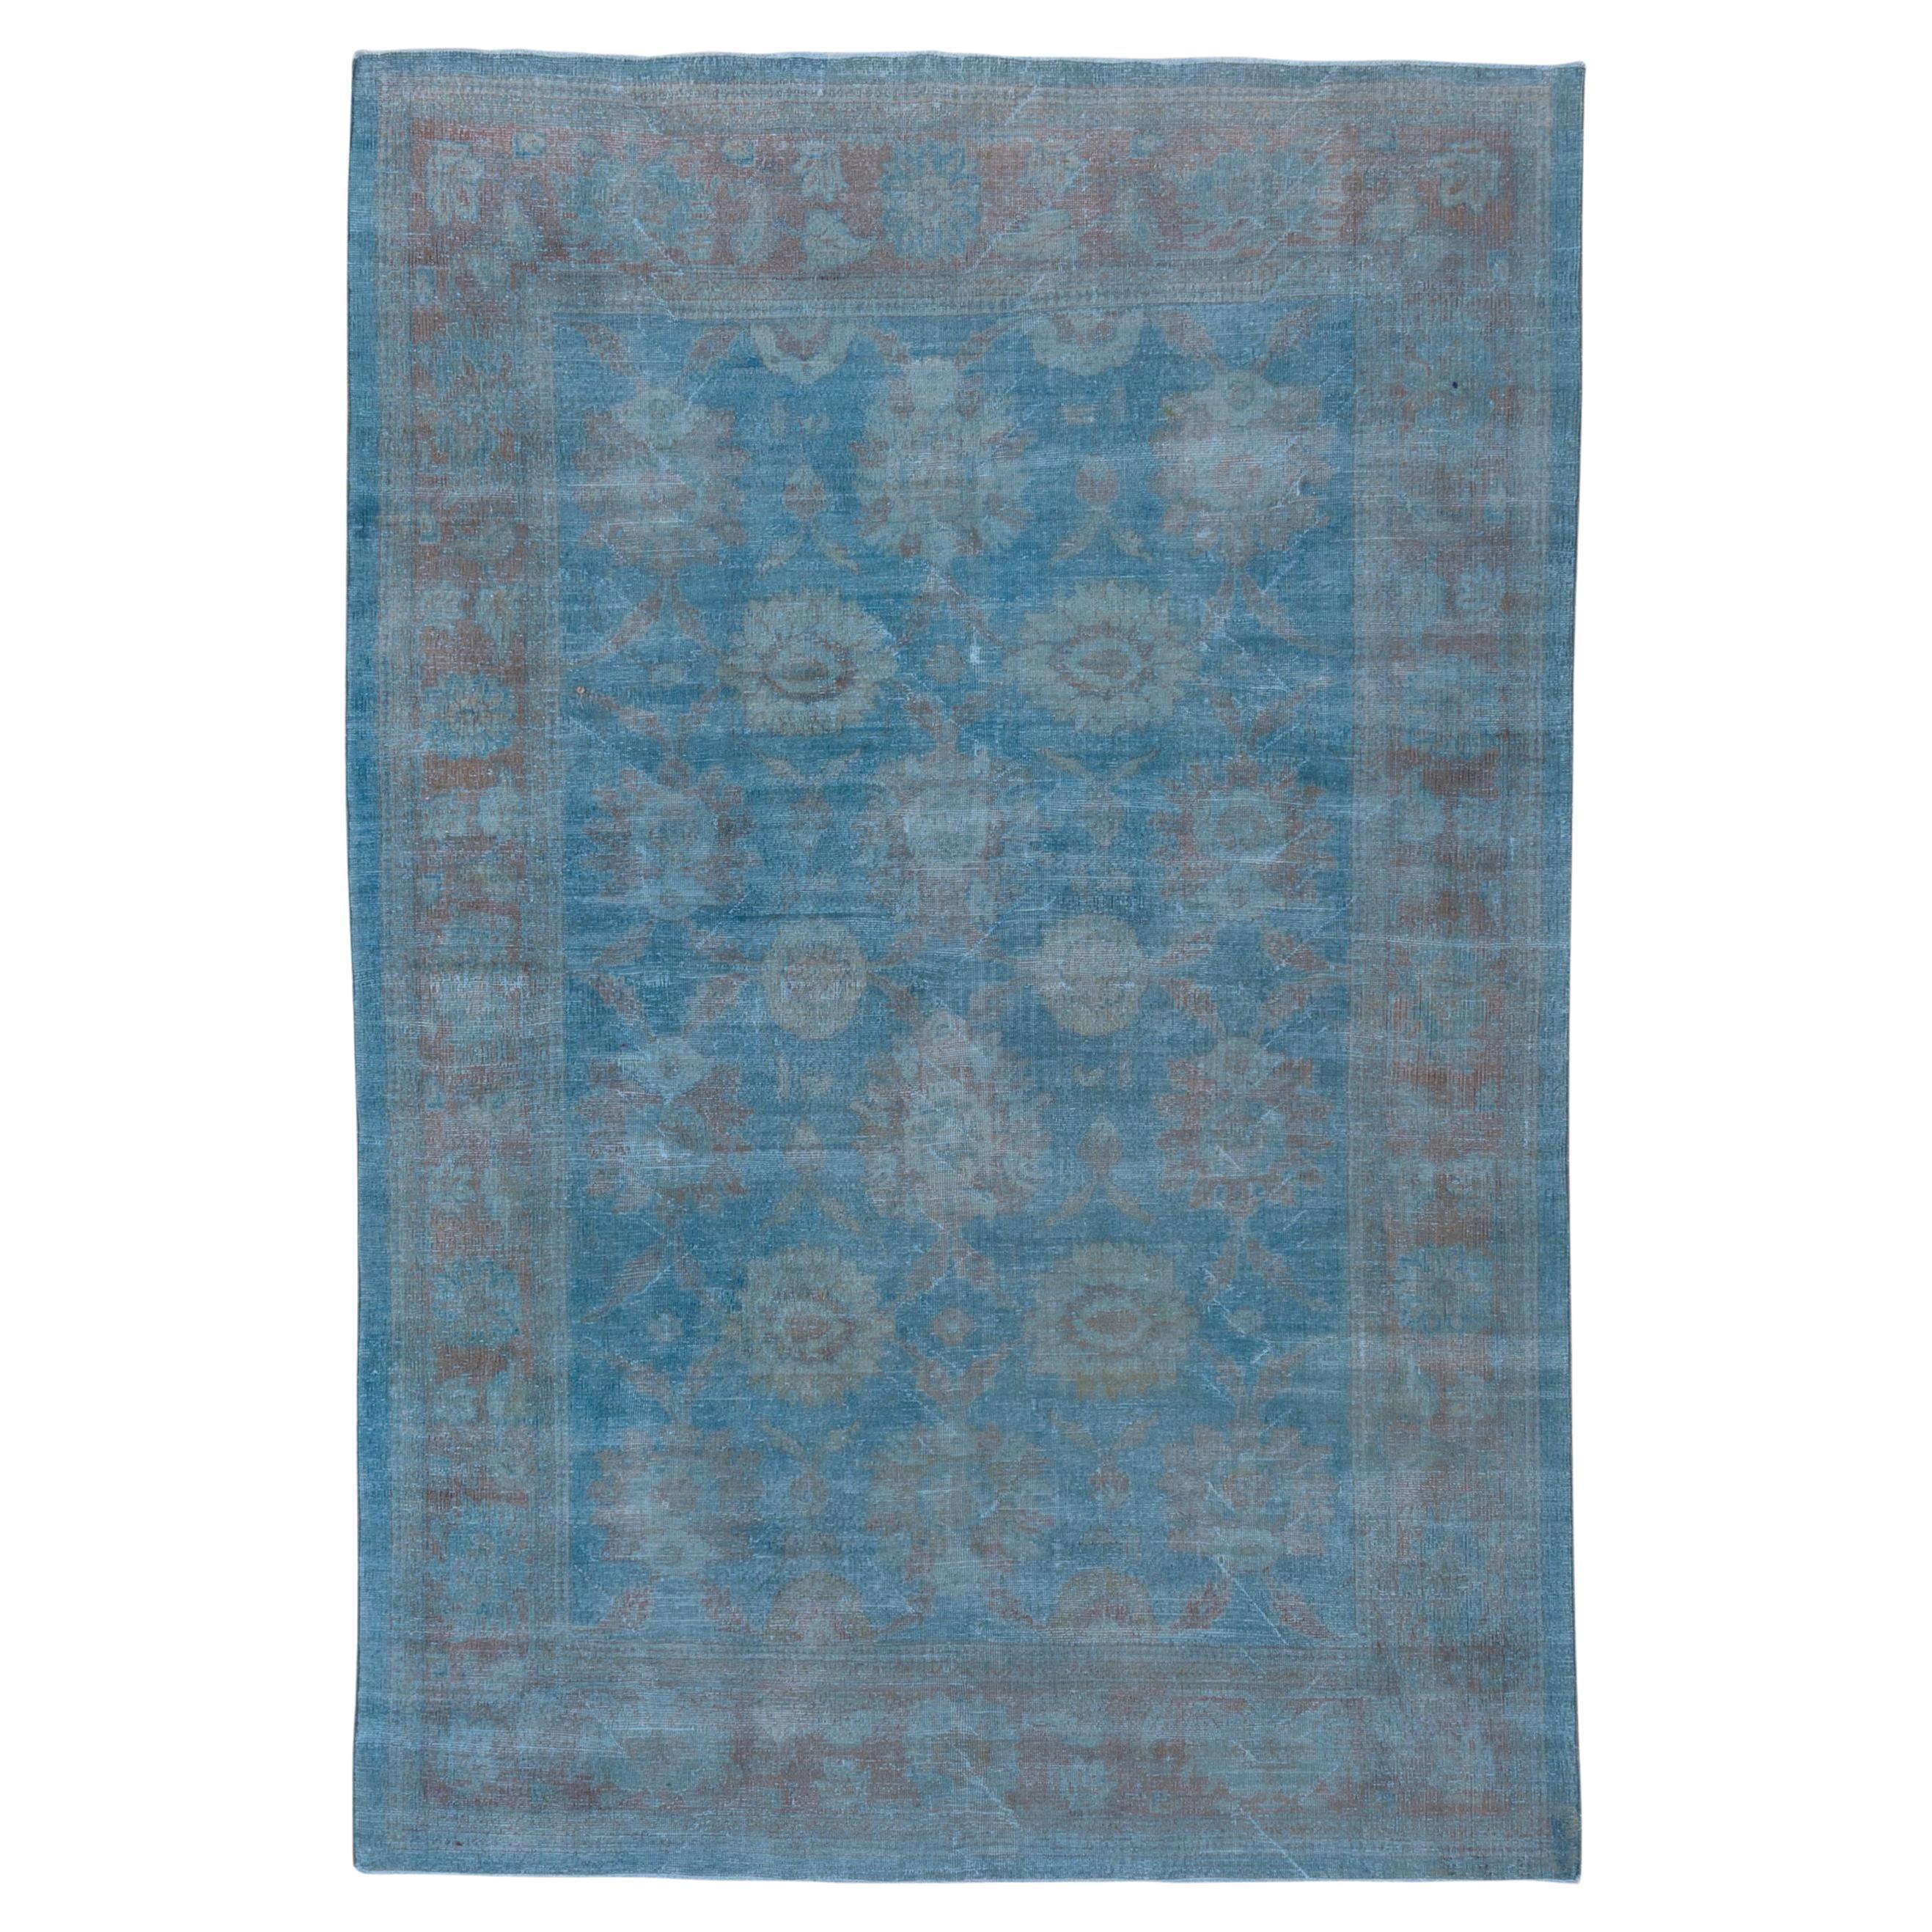 Antique Blue Persian Mahal Carpet For Sale